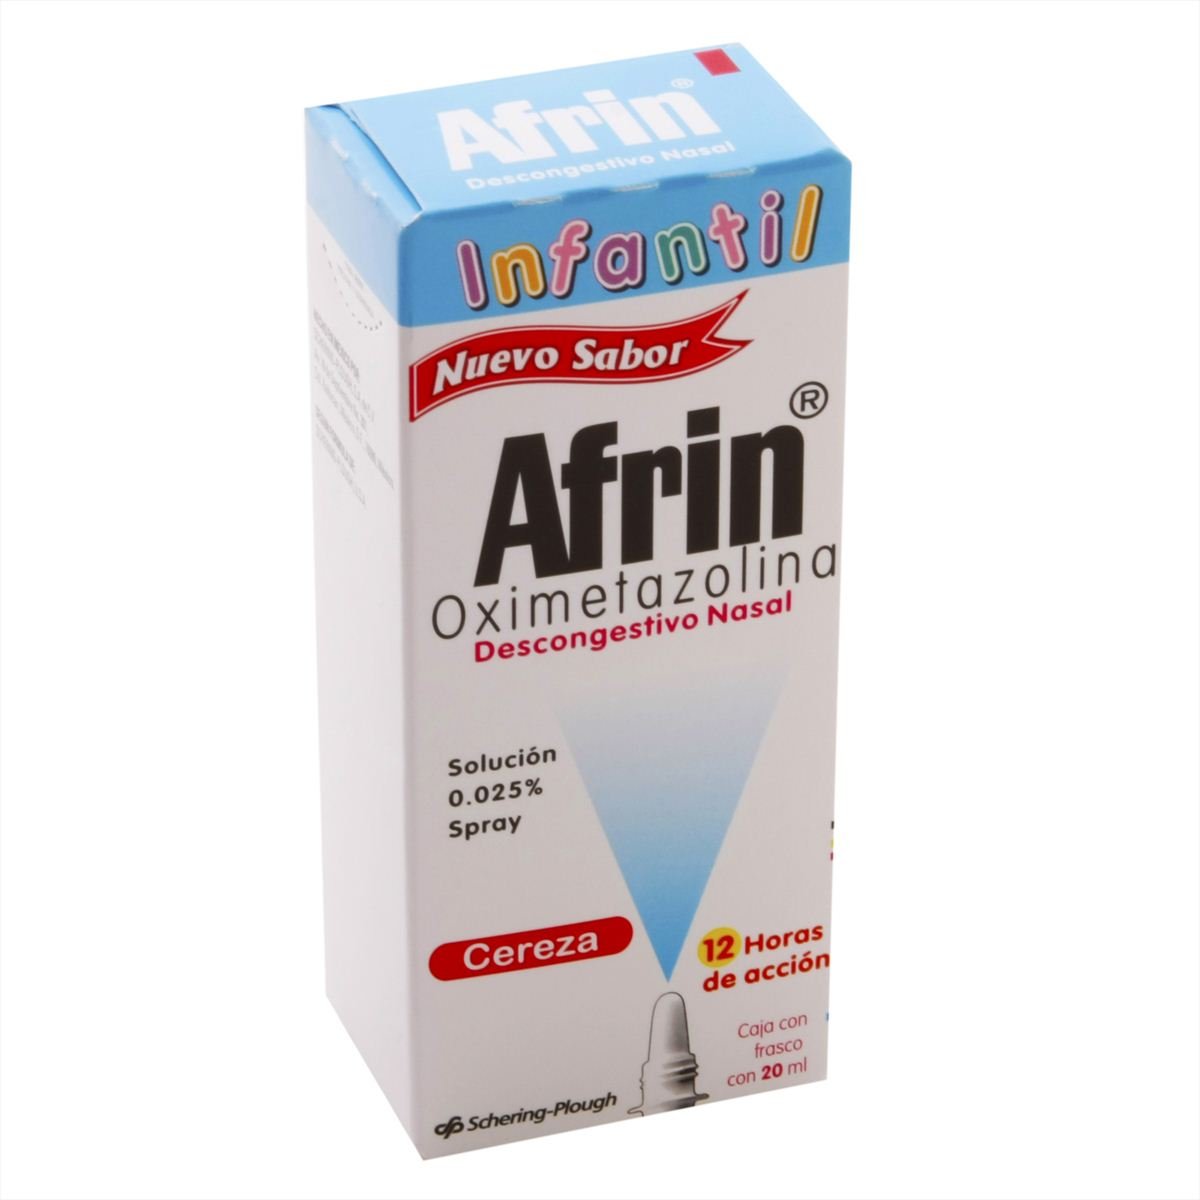 Afrin lub spray 20ml cza inf